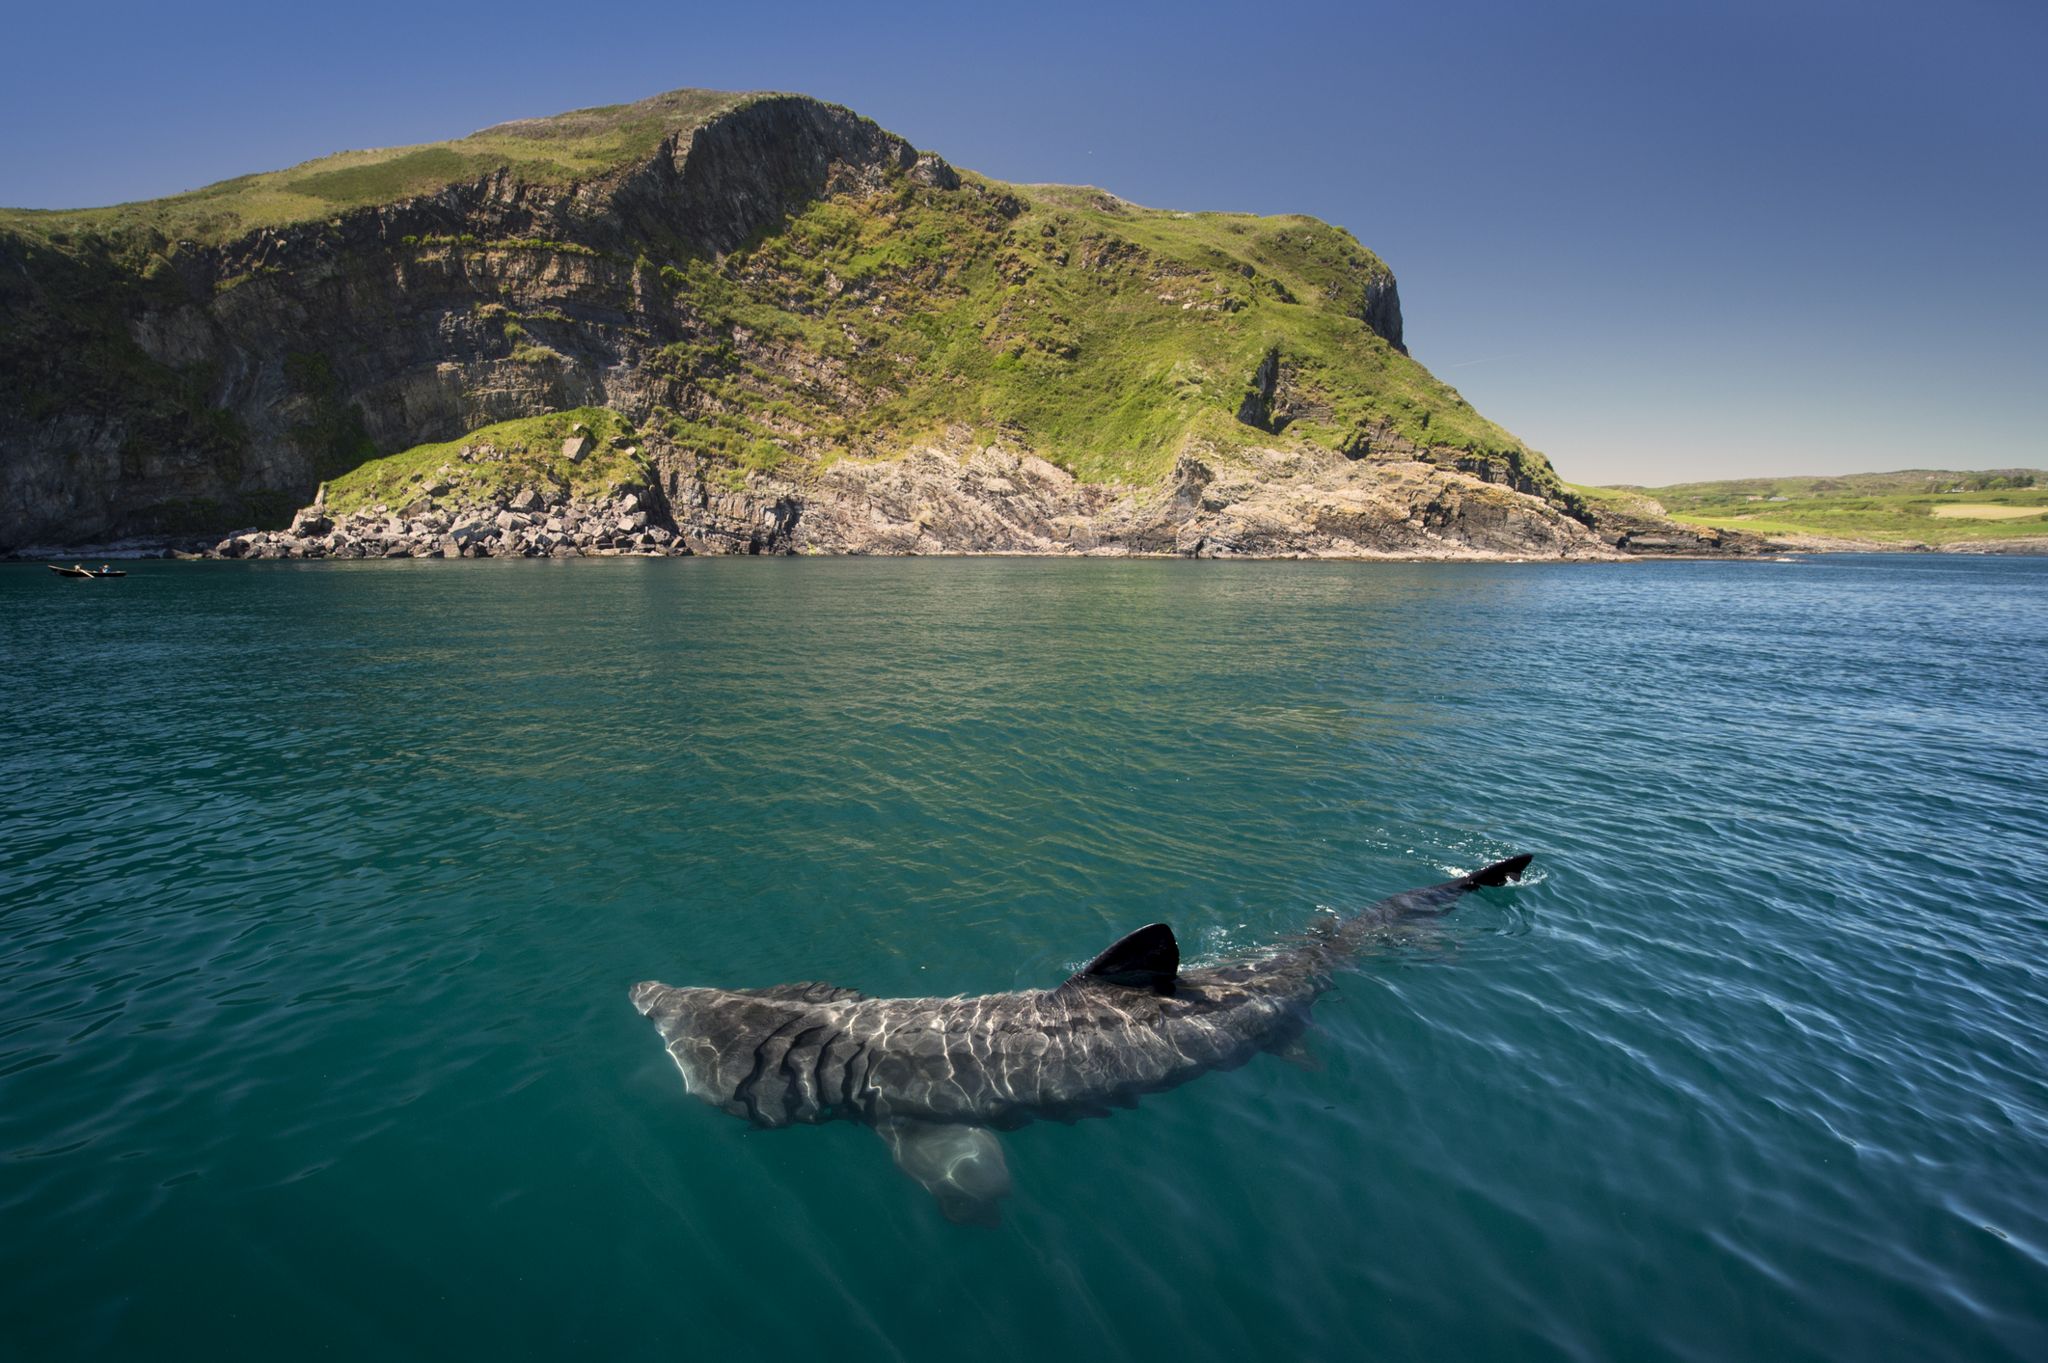 Basking shark (Cetorhinus maximus), Baltimore, Cork, Ireland - stock photo